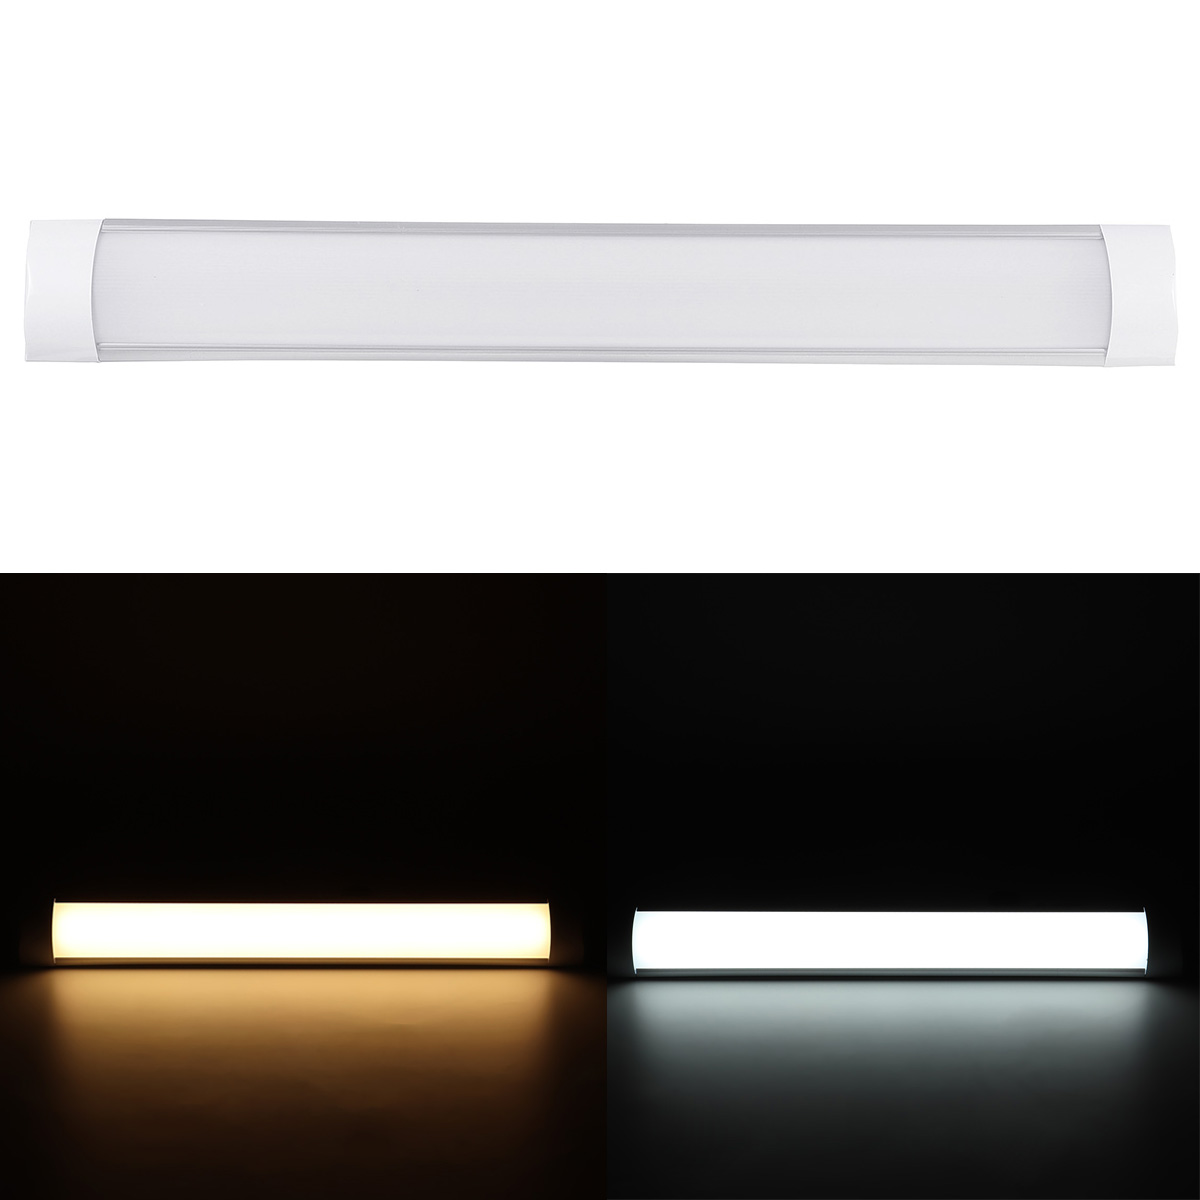 6Pcs-2FT-LED-Batten-Tube-Light-For-Garage-Workshop-Ceiling-Panel-Wall-Lamp-1730495-2